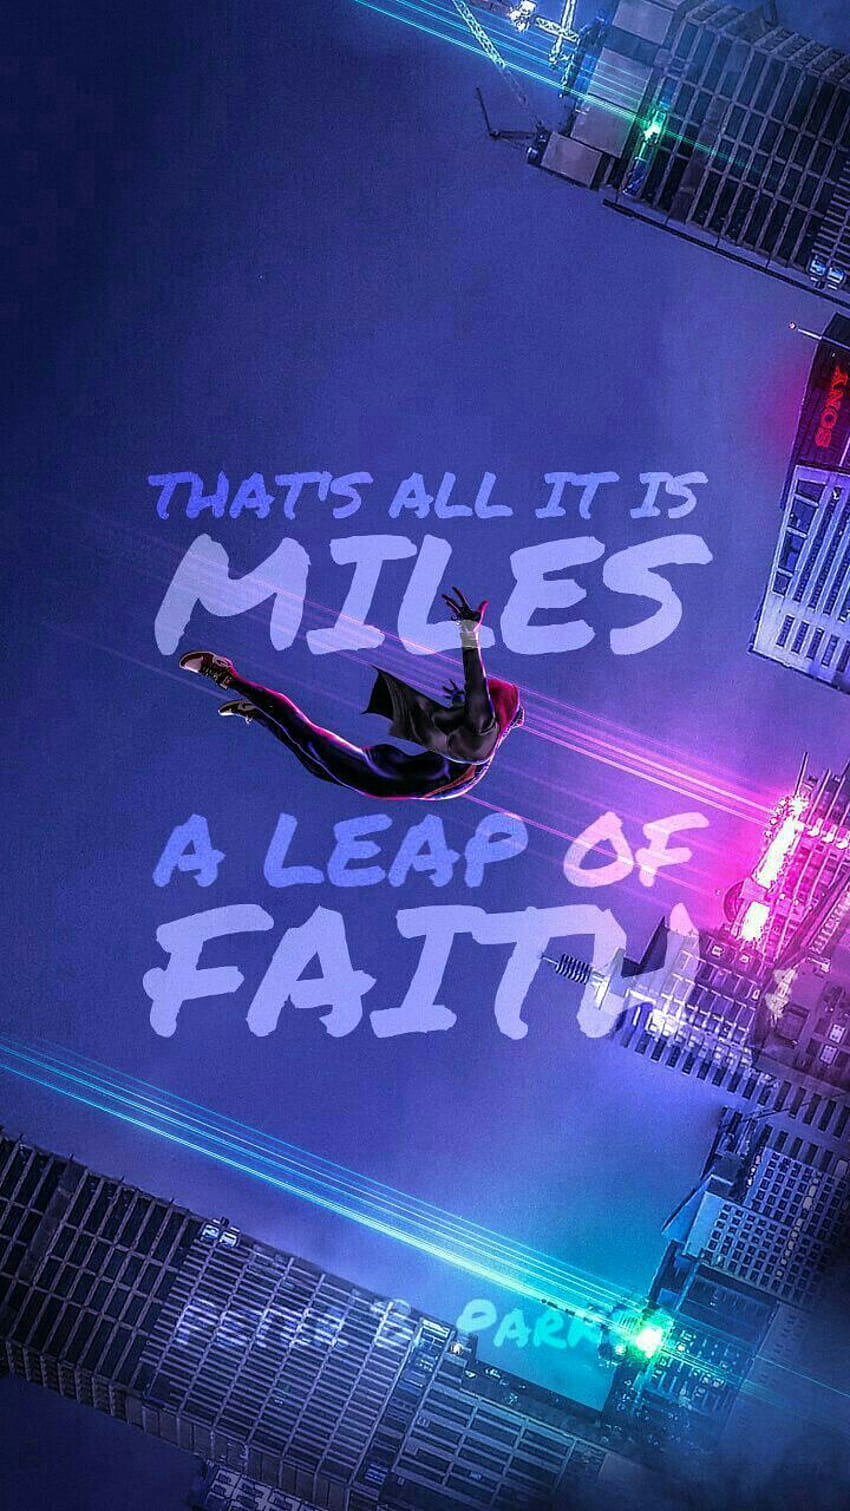 Ein Sprung des Glaubens, Spider-Man-Zitate HD-Handy-Hintergrundbild